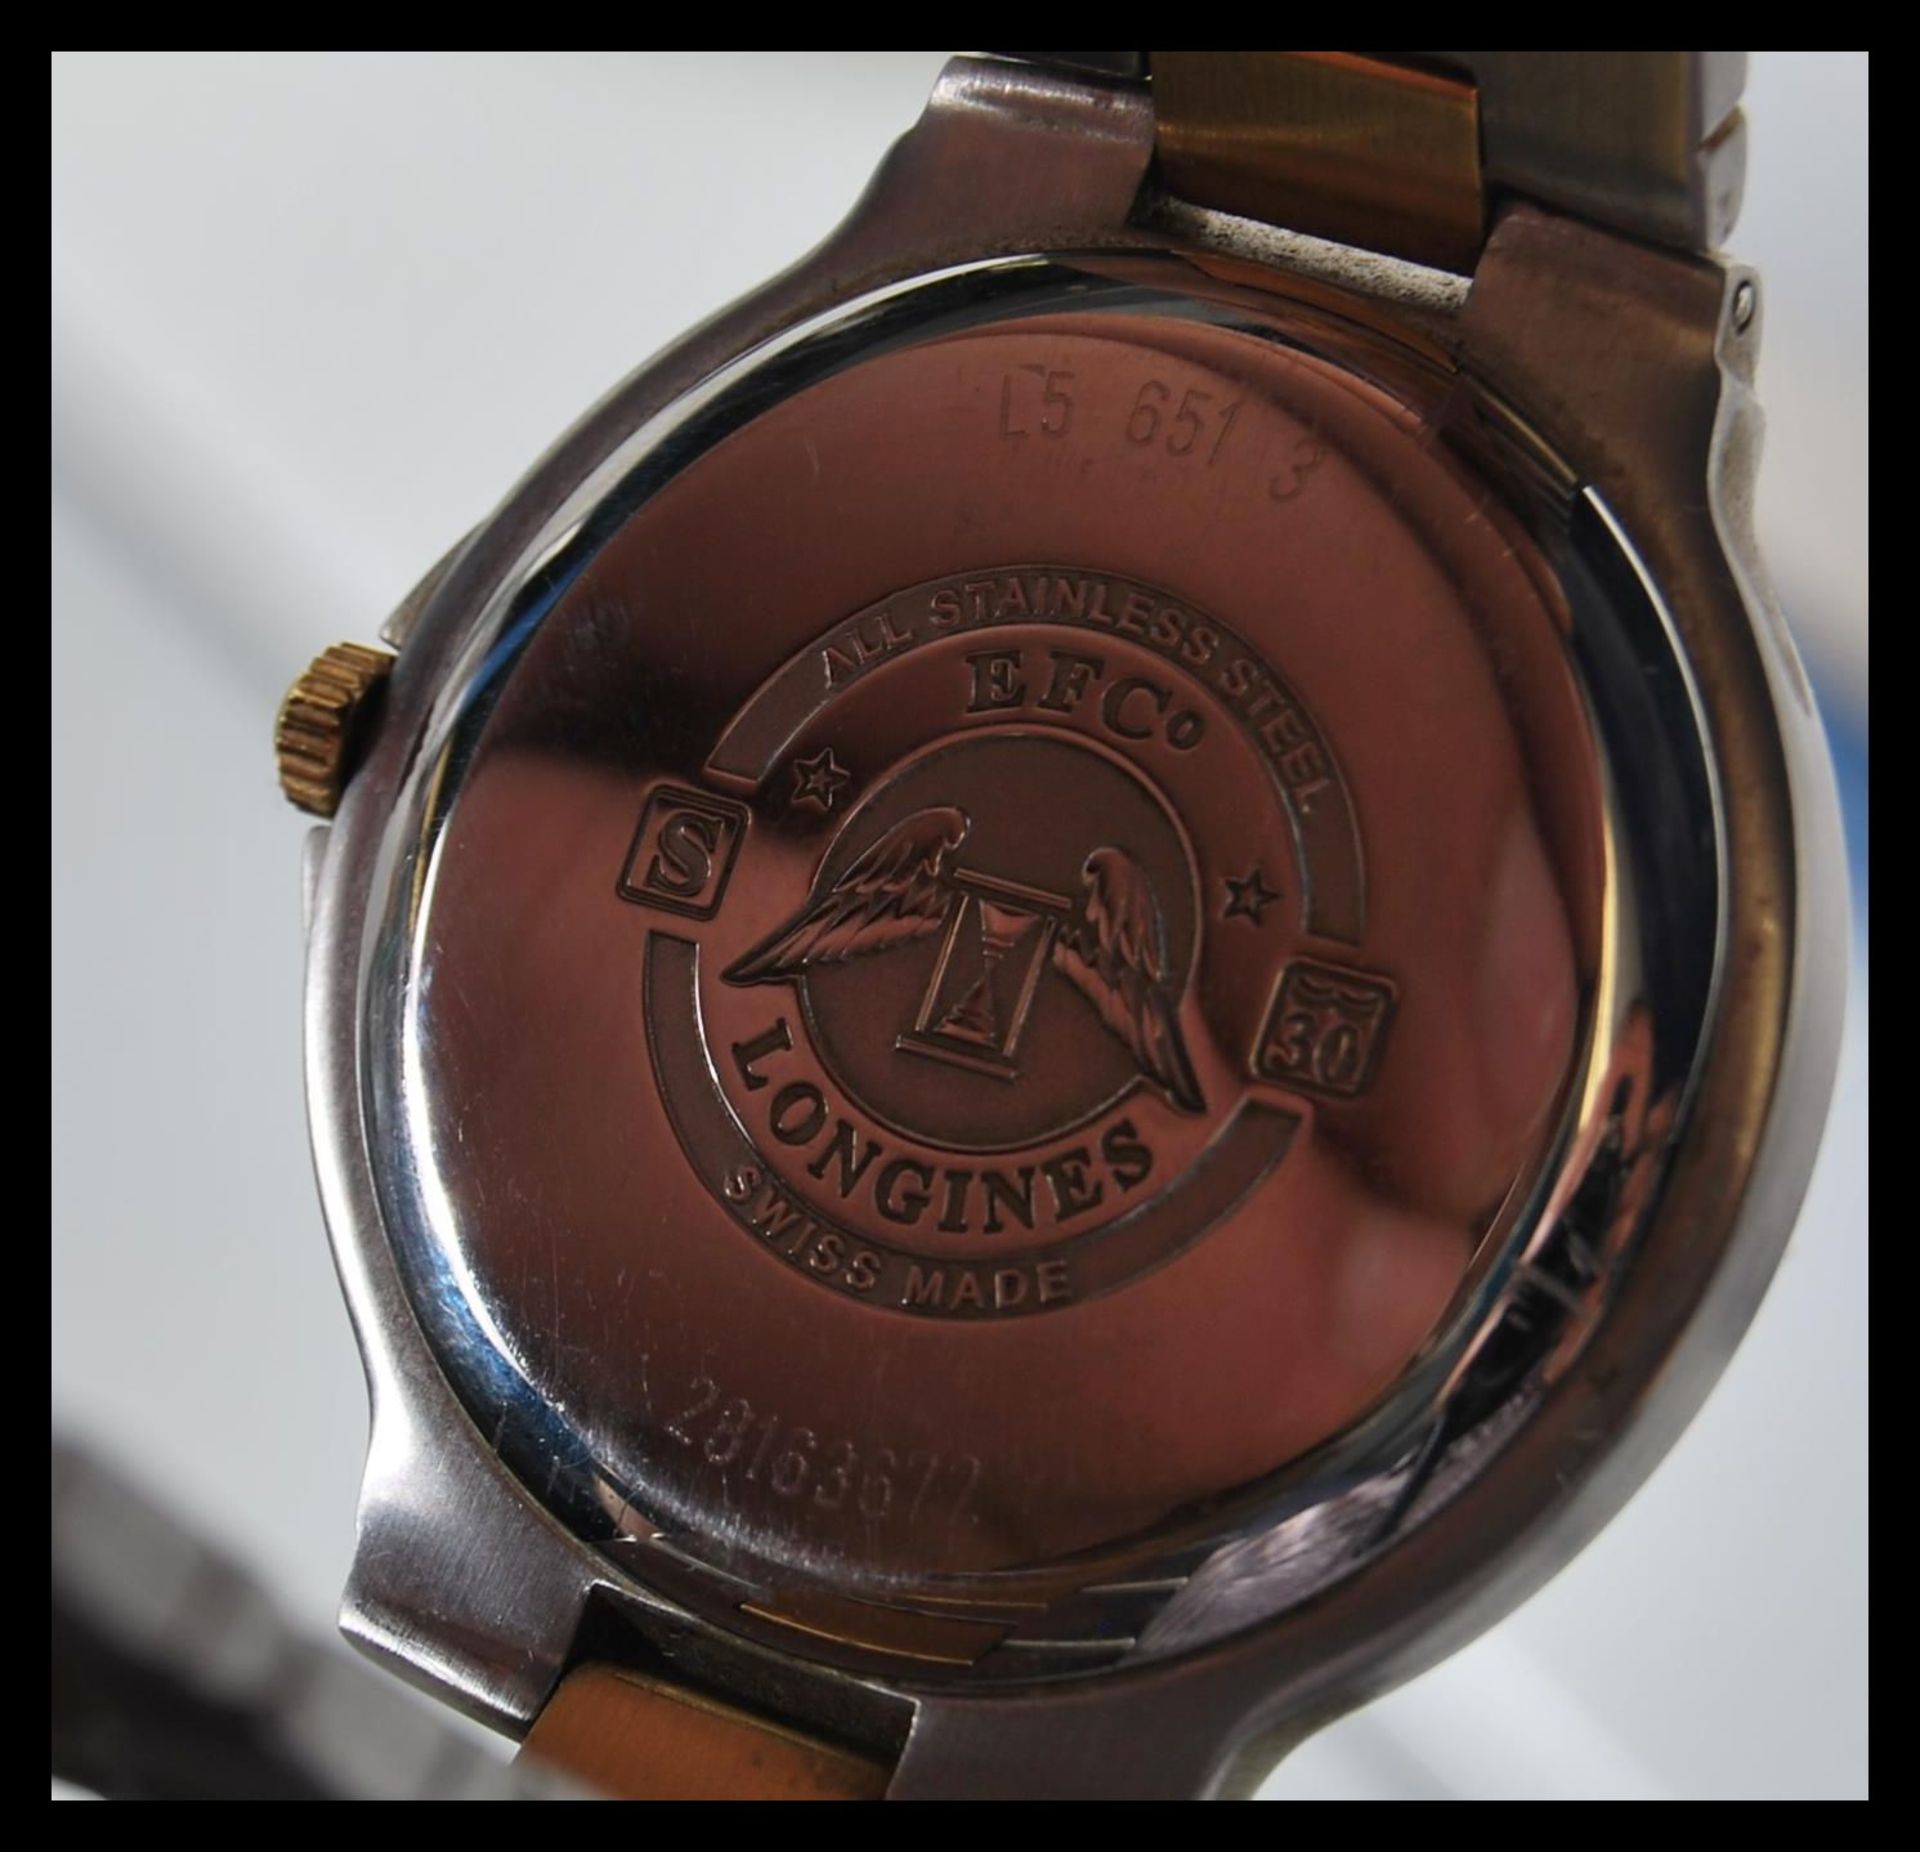 Longines, Flagship, Bi-colour bracelet watch, no. 28163672, current model Movement L5 651 3. - Image 6 of 7